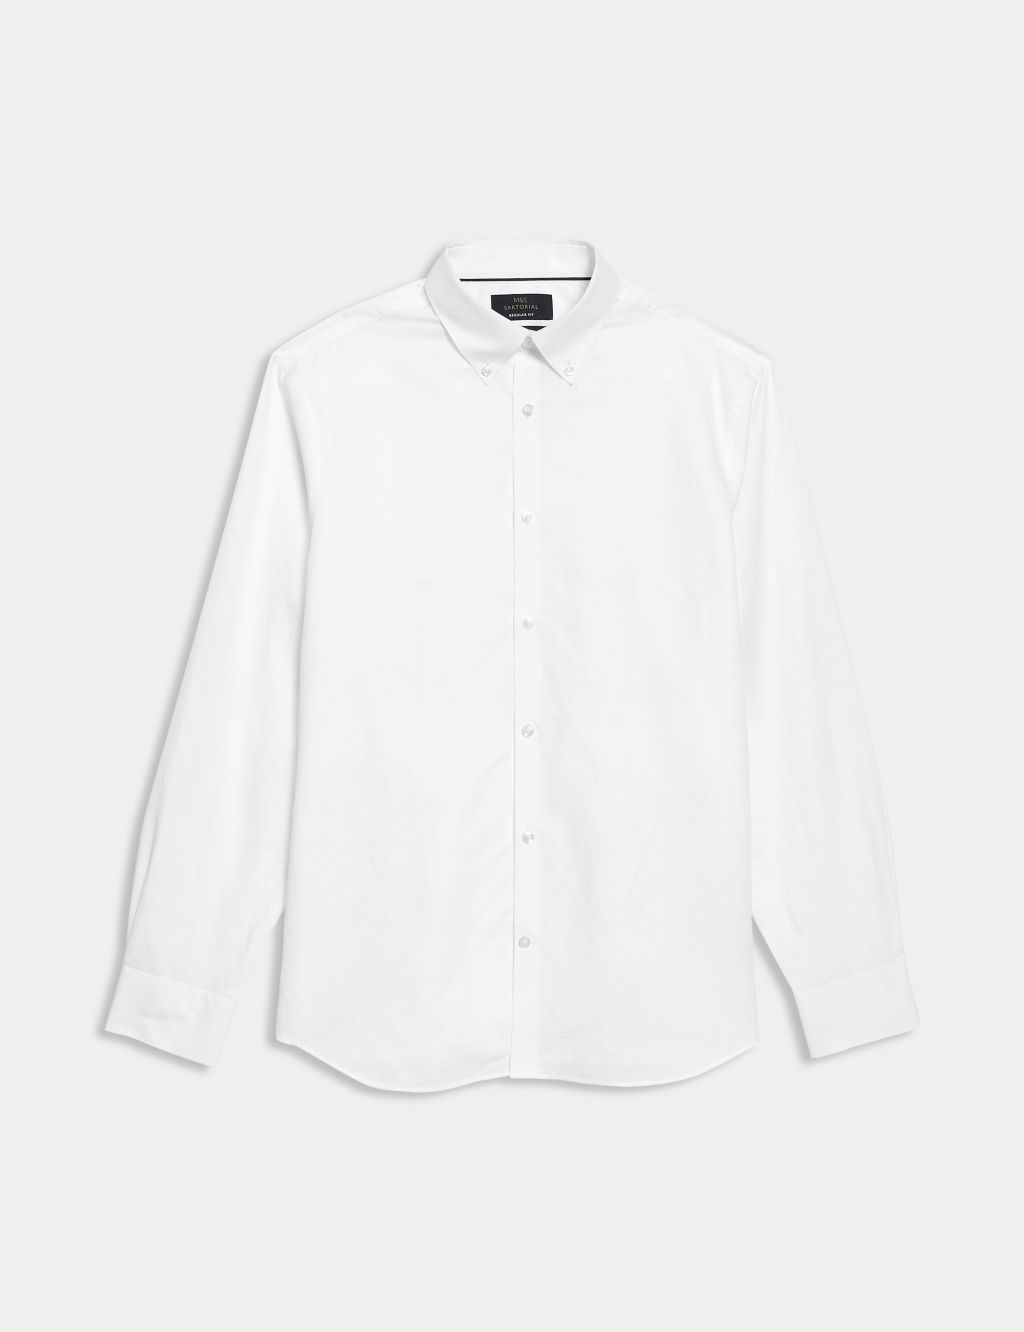 Regular Fit Linen Blend Weave Shirt | M&S SARTORIAL | M&S